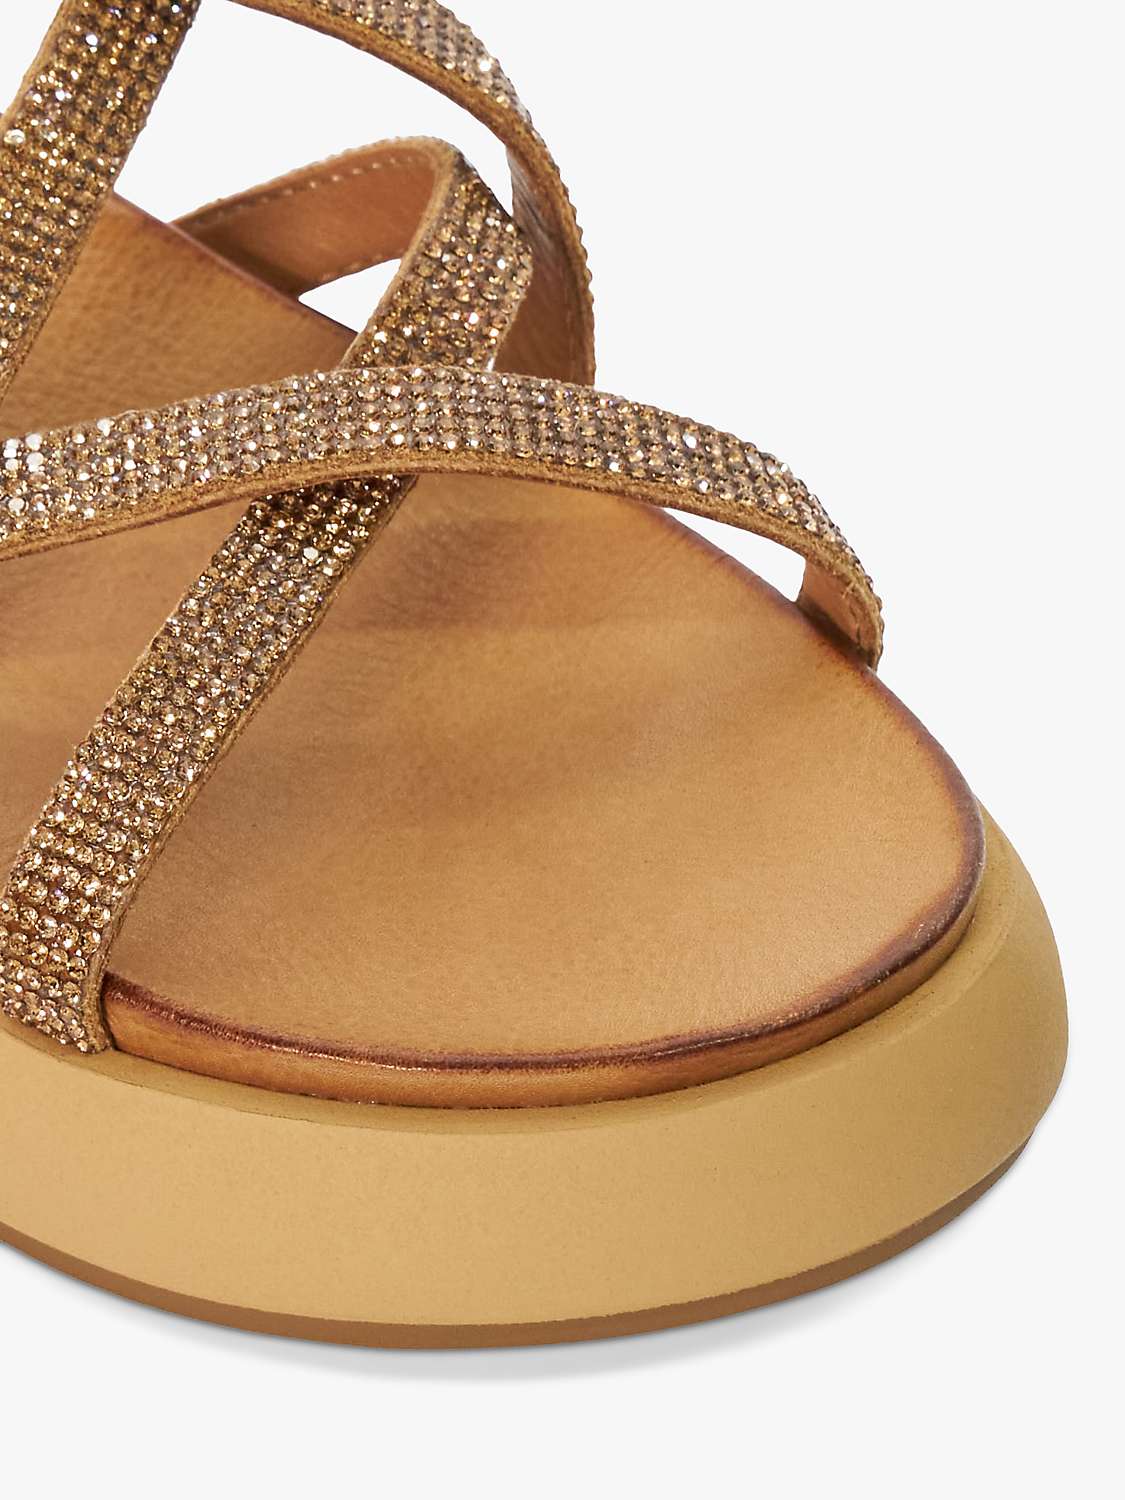 Buy Dune Ledge Embellished Leather Flatform Sandals, Camel Online at johnlewis.com